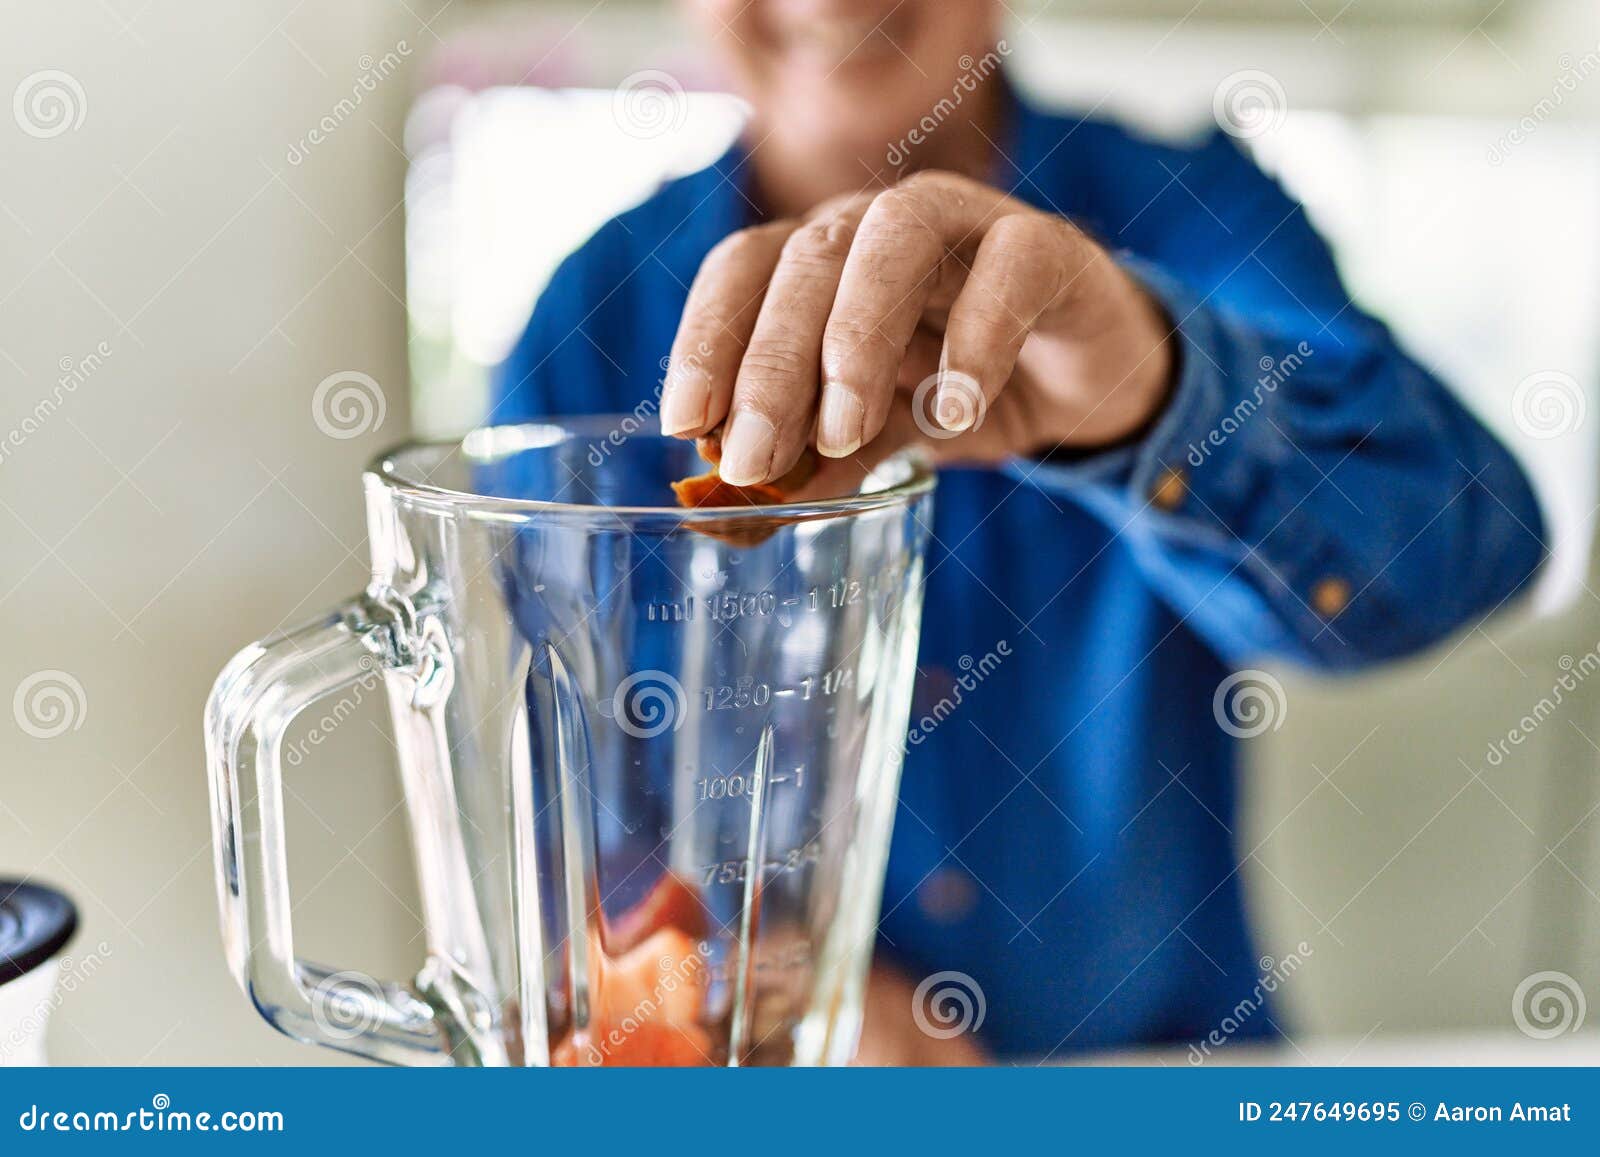 senior man smiling confident putting datil in blender at kitchen